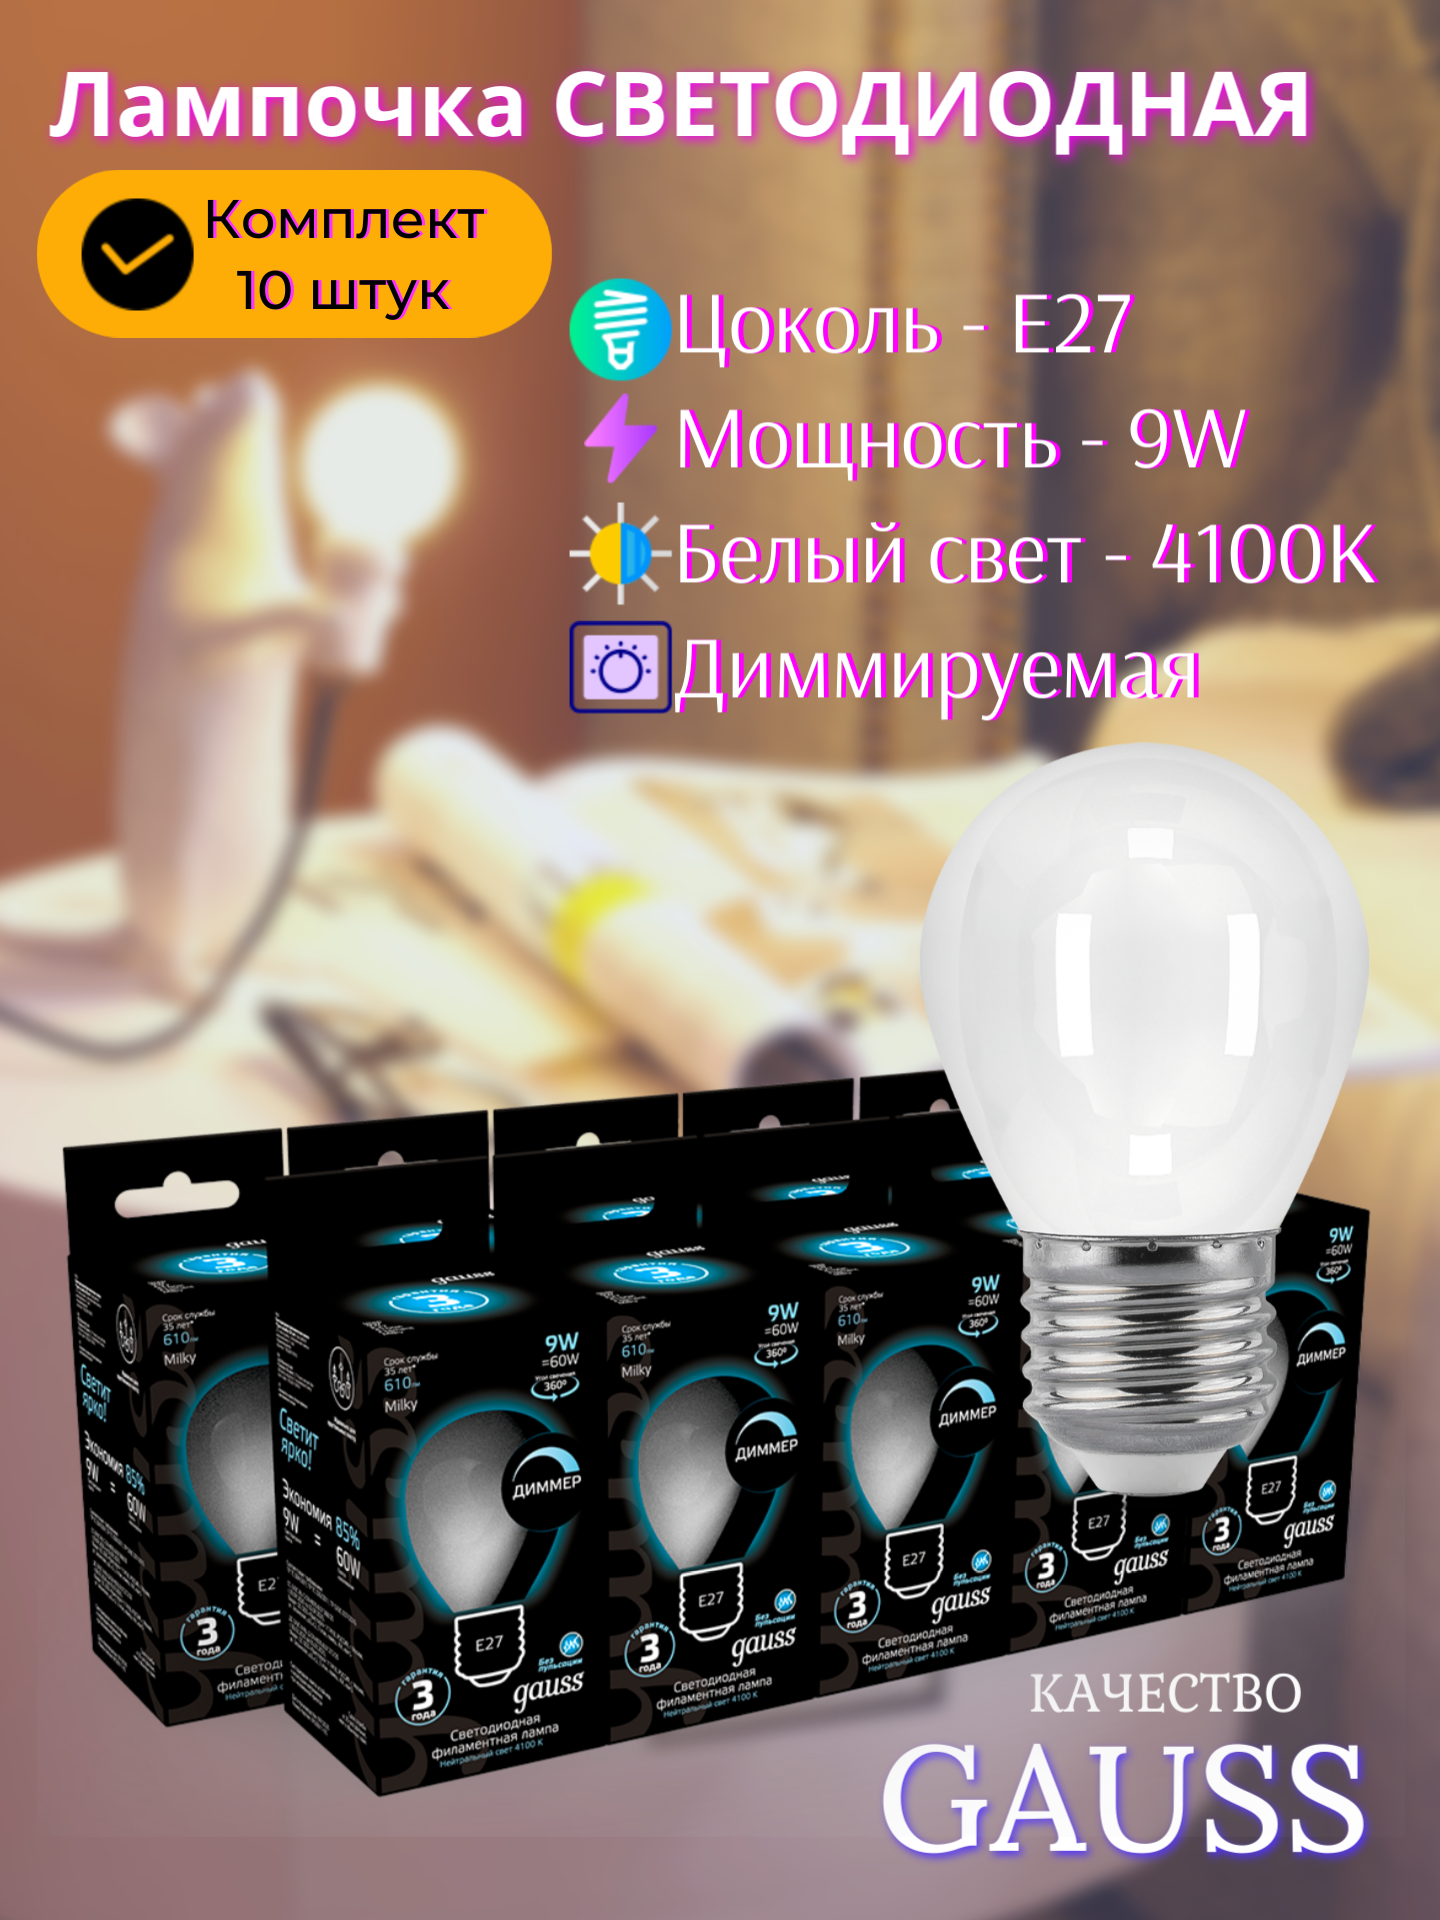 Лампочка светодиодная Е27 Шар 9Вт нейтральный белый свет 4100К упаковка 10 шт. матовая диммируемая Gauss Filament